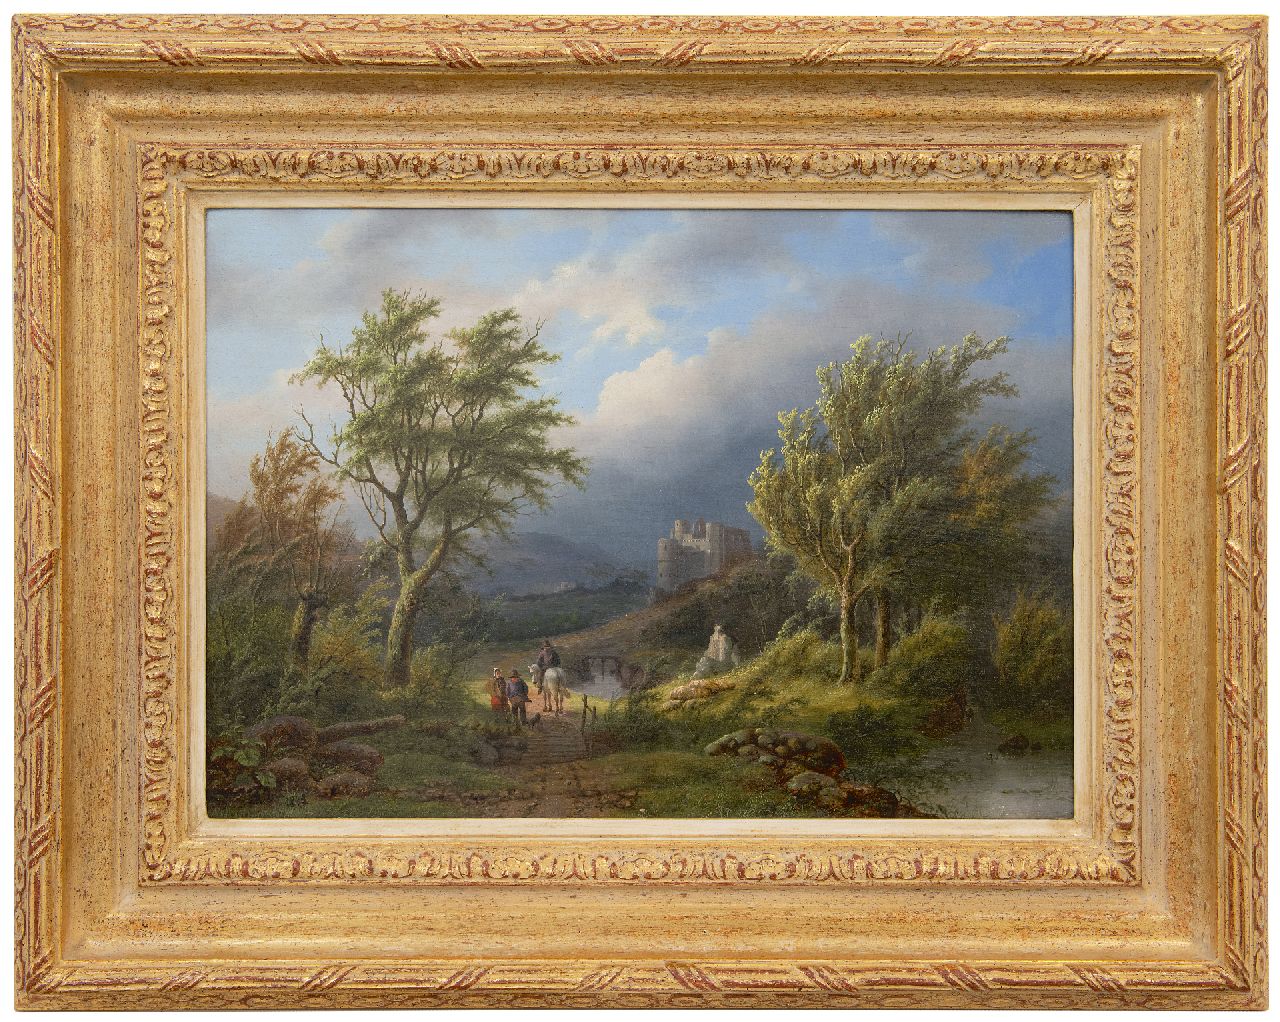 Daiwaille A.J.  | Alexander Joseph Daiwaille | Schilderijen te koop aangeboden | Opkomende storm, olieverf op paneel 34,0 x 47,7 cm, gesigneerd linksonder met initialen en gedateed 1848